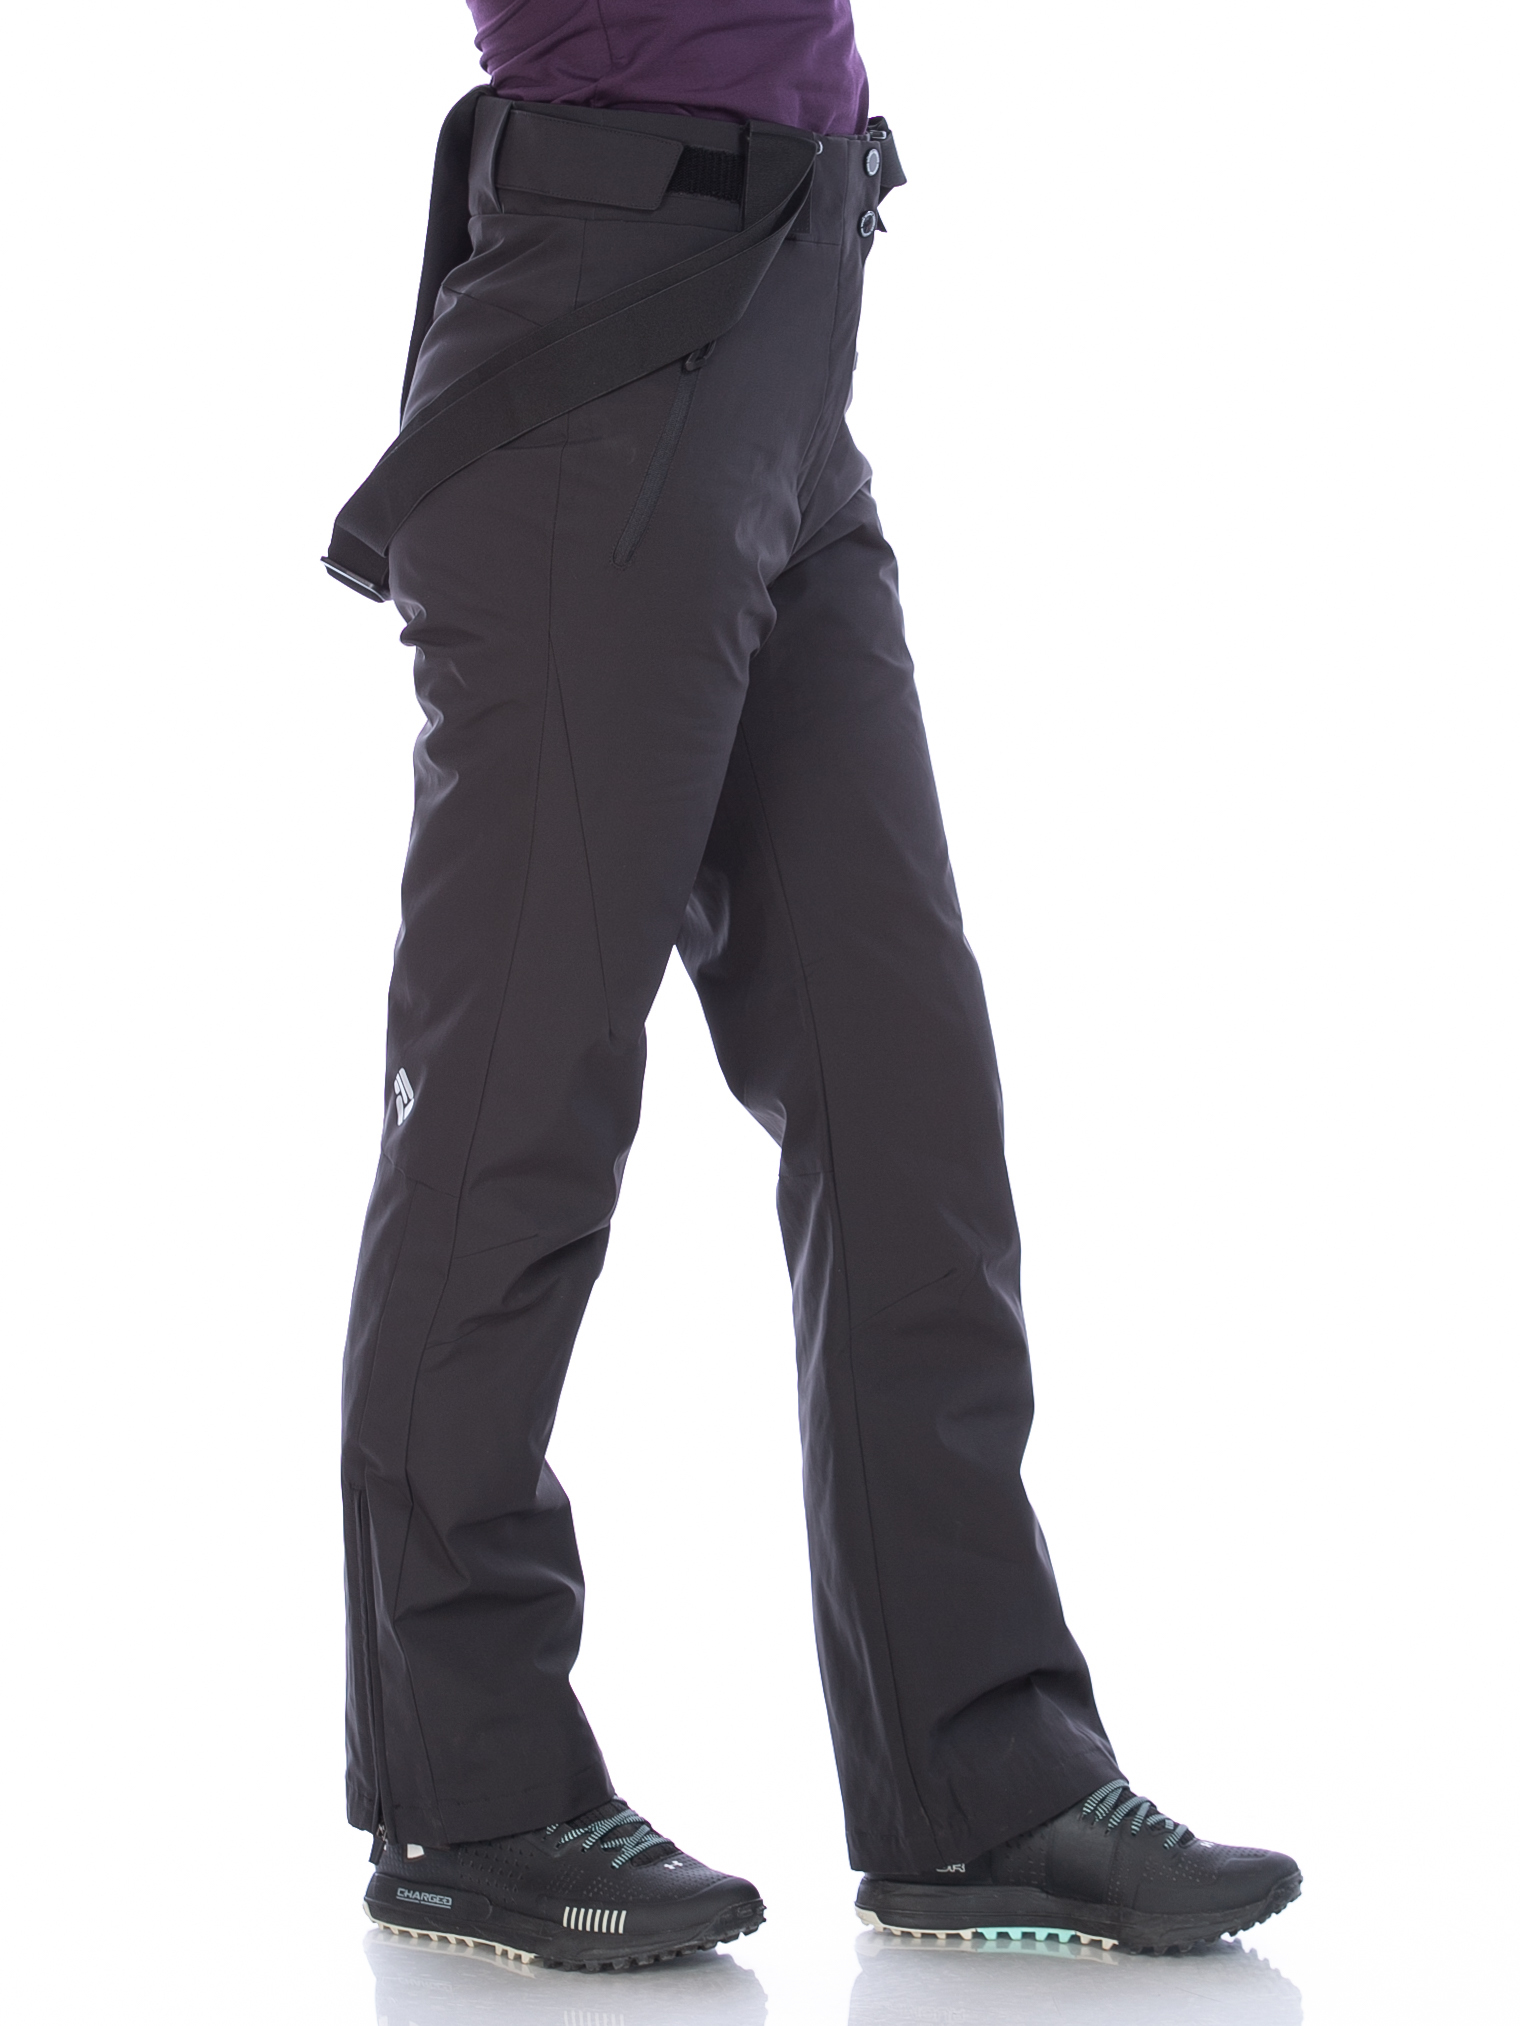 Горнолыжные зимние утепленные брюки женские, цвет черный, Forcelab